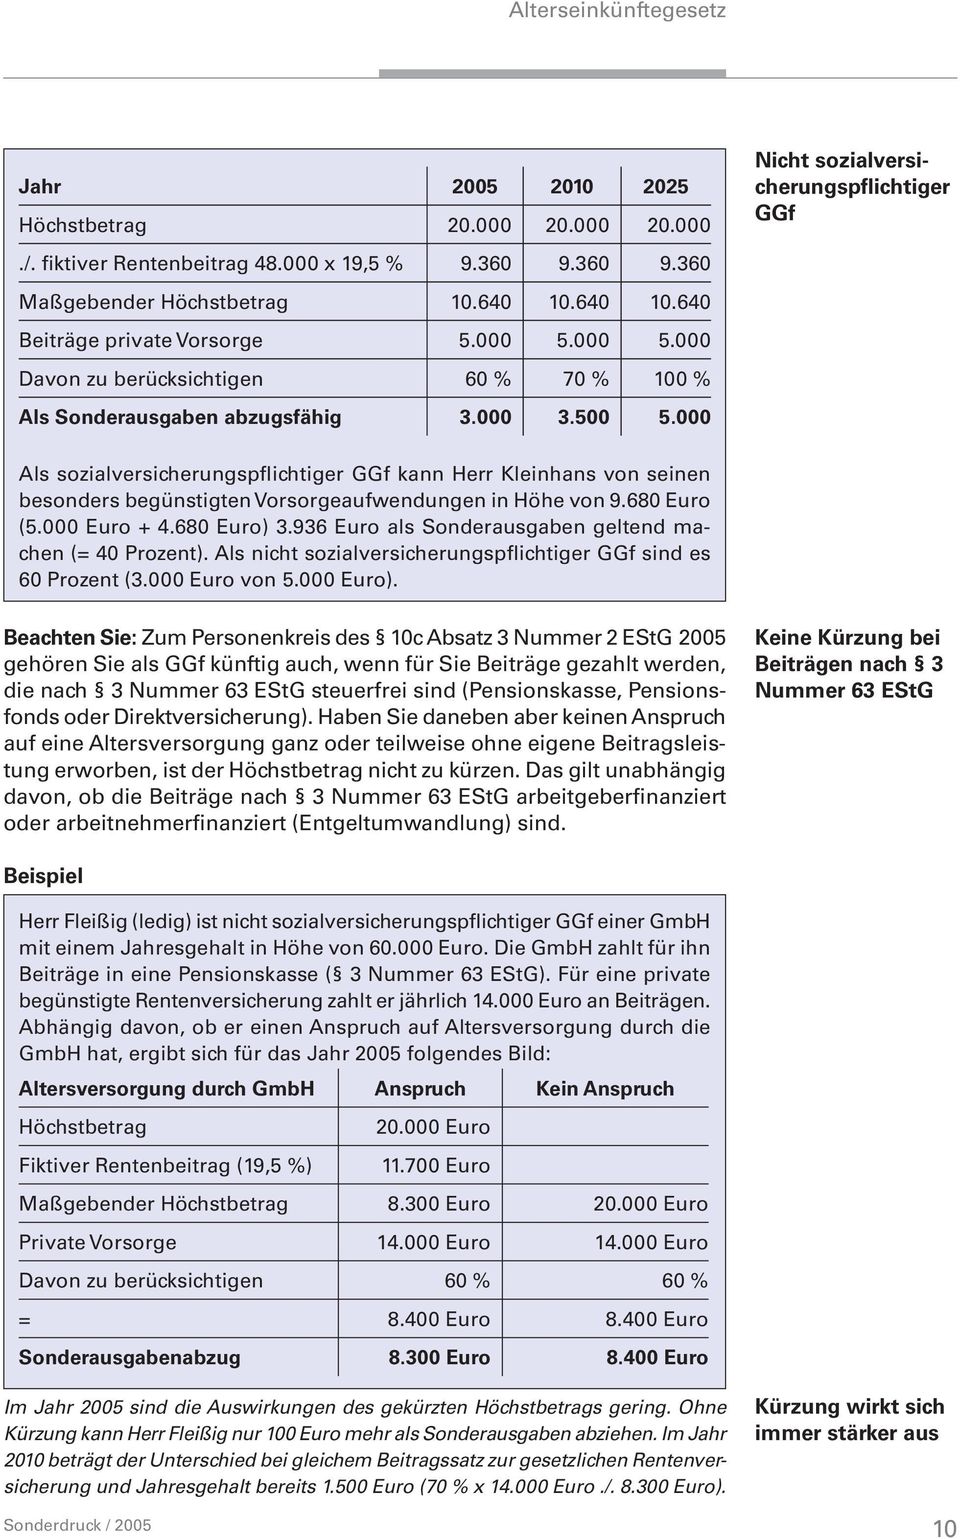 000 Nicht sozialversicherungspflichtiger GGf Als sozialversicherungspflichtiger GGf kann Herr Kleinhans von seinen besonders begünstigten Vorsorgeaufwendungen in Höhe von 9.680 Euro (5.000 Euro + 4.